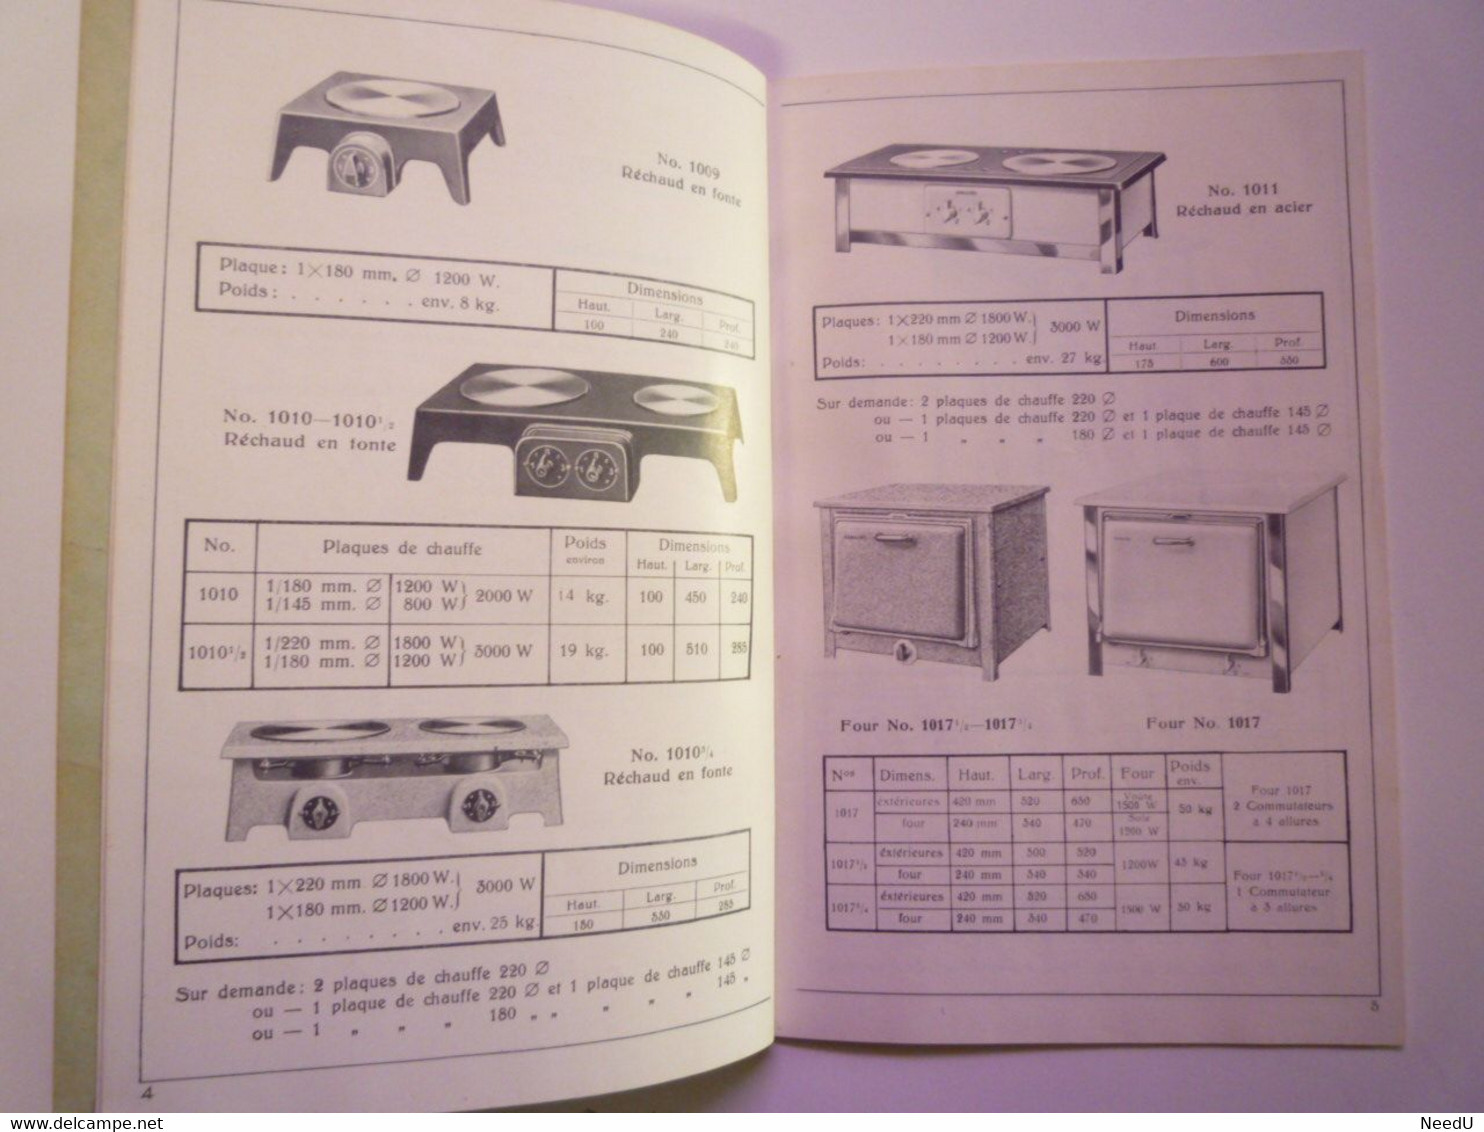 GP 2021 - 80  CATALOGUE  1935  CUISINIERES SCHOLTES  -  20 Pages Format  14 X 20,5 Cm Bien Illustrées.  XXX - Zonder Classificatie